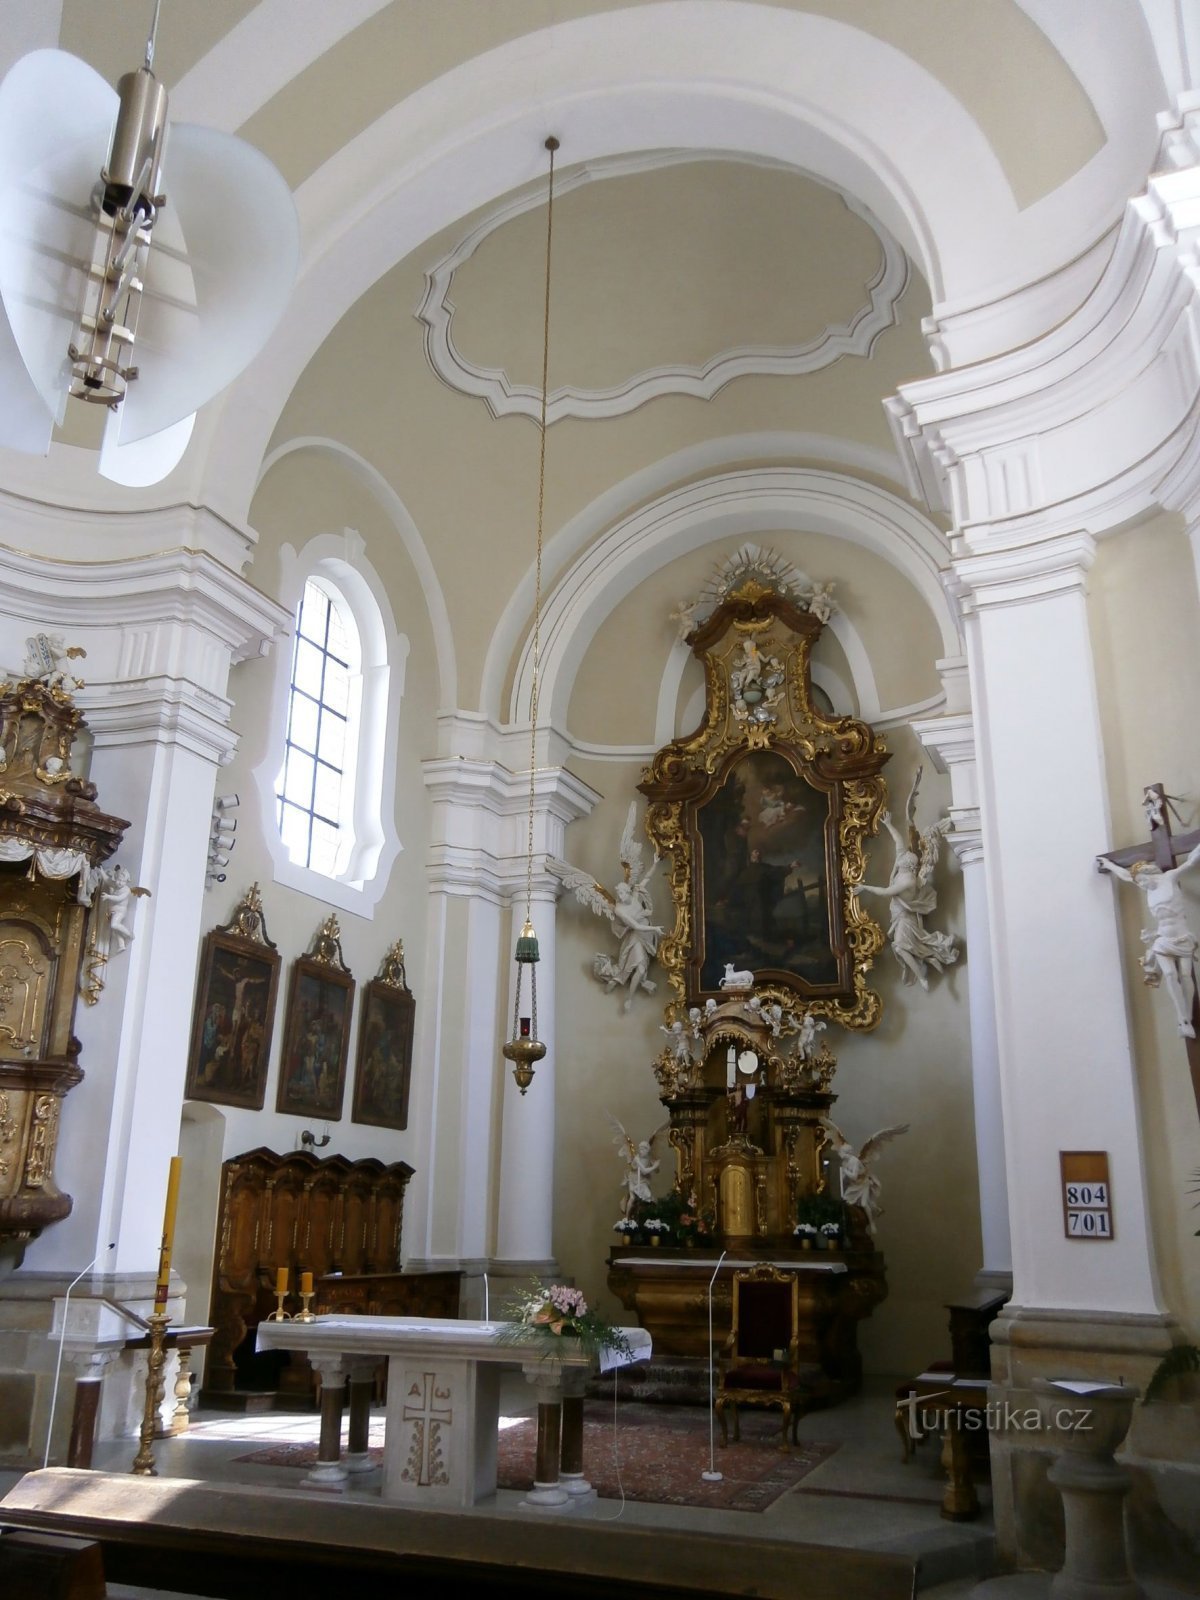 Nội thất của nhà thờ St. Antonína (Hradec Králové, 23.5.2014 tháng XNUMX năm XNUMX)